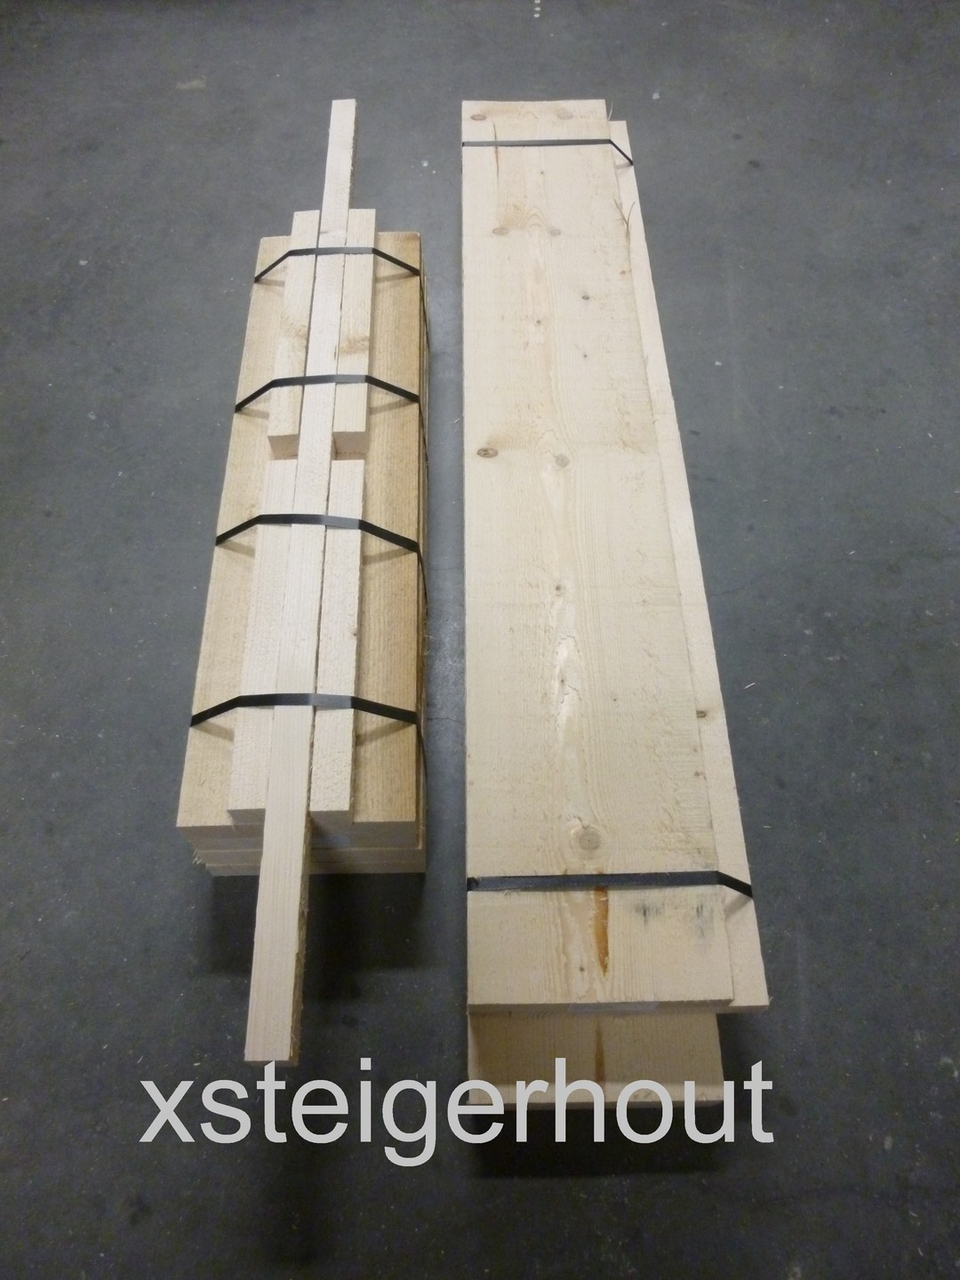 Steigerhout Bouwpakket - xsteigerhout